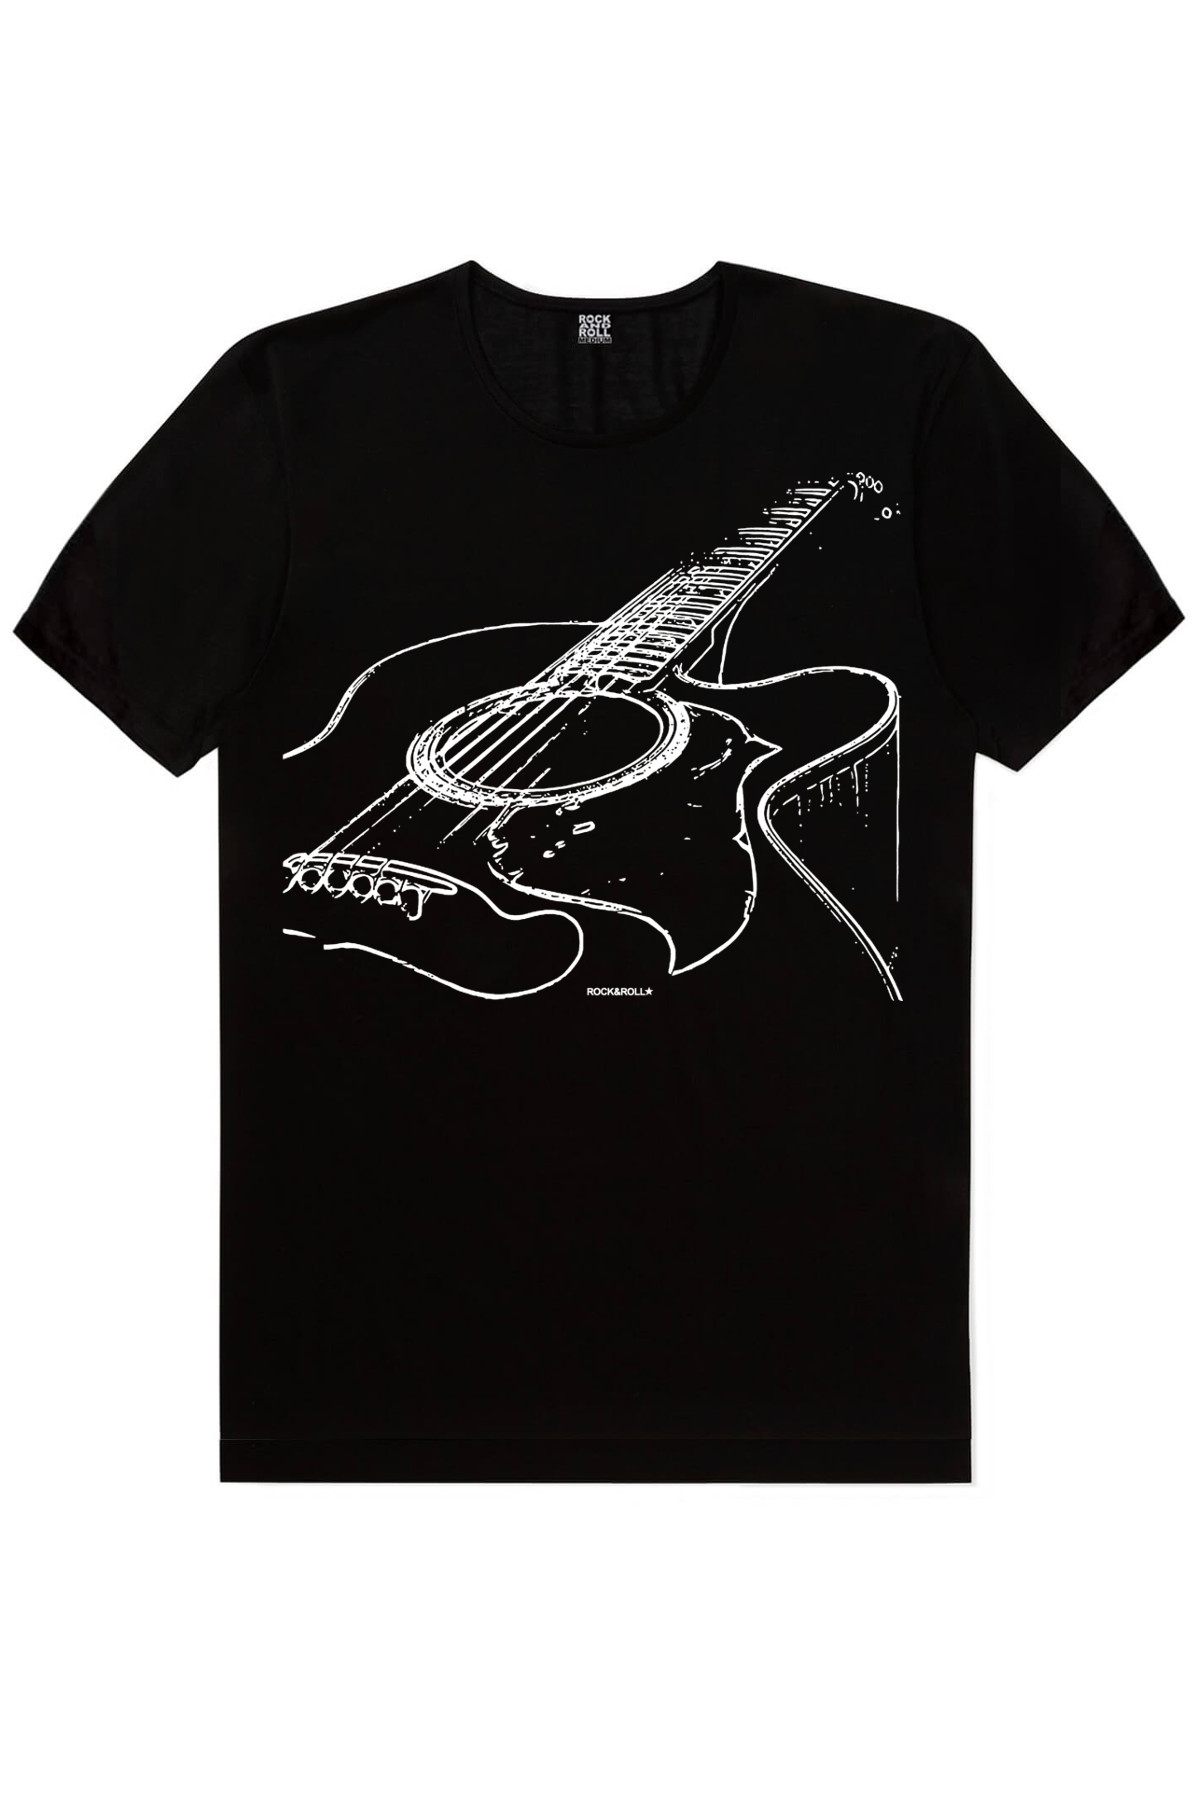 Fender Gitar, Gitarımın Telleri Erkek Tişört 2'li Eko Paket